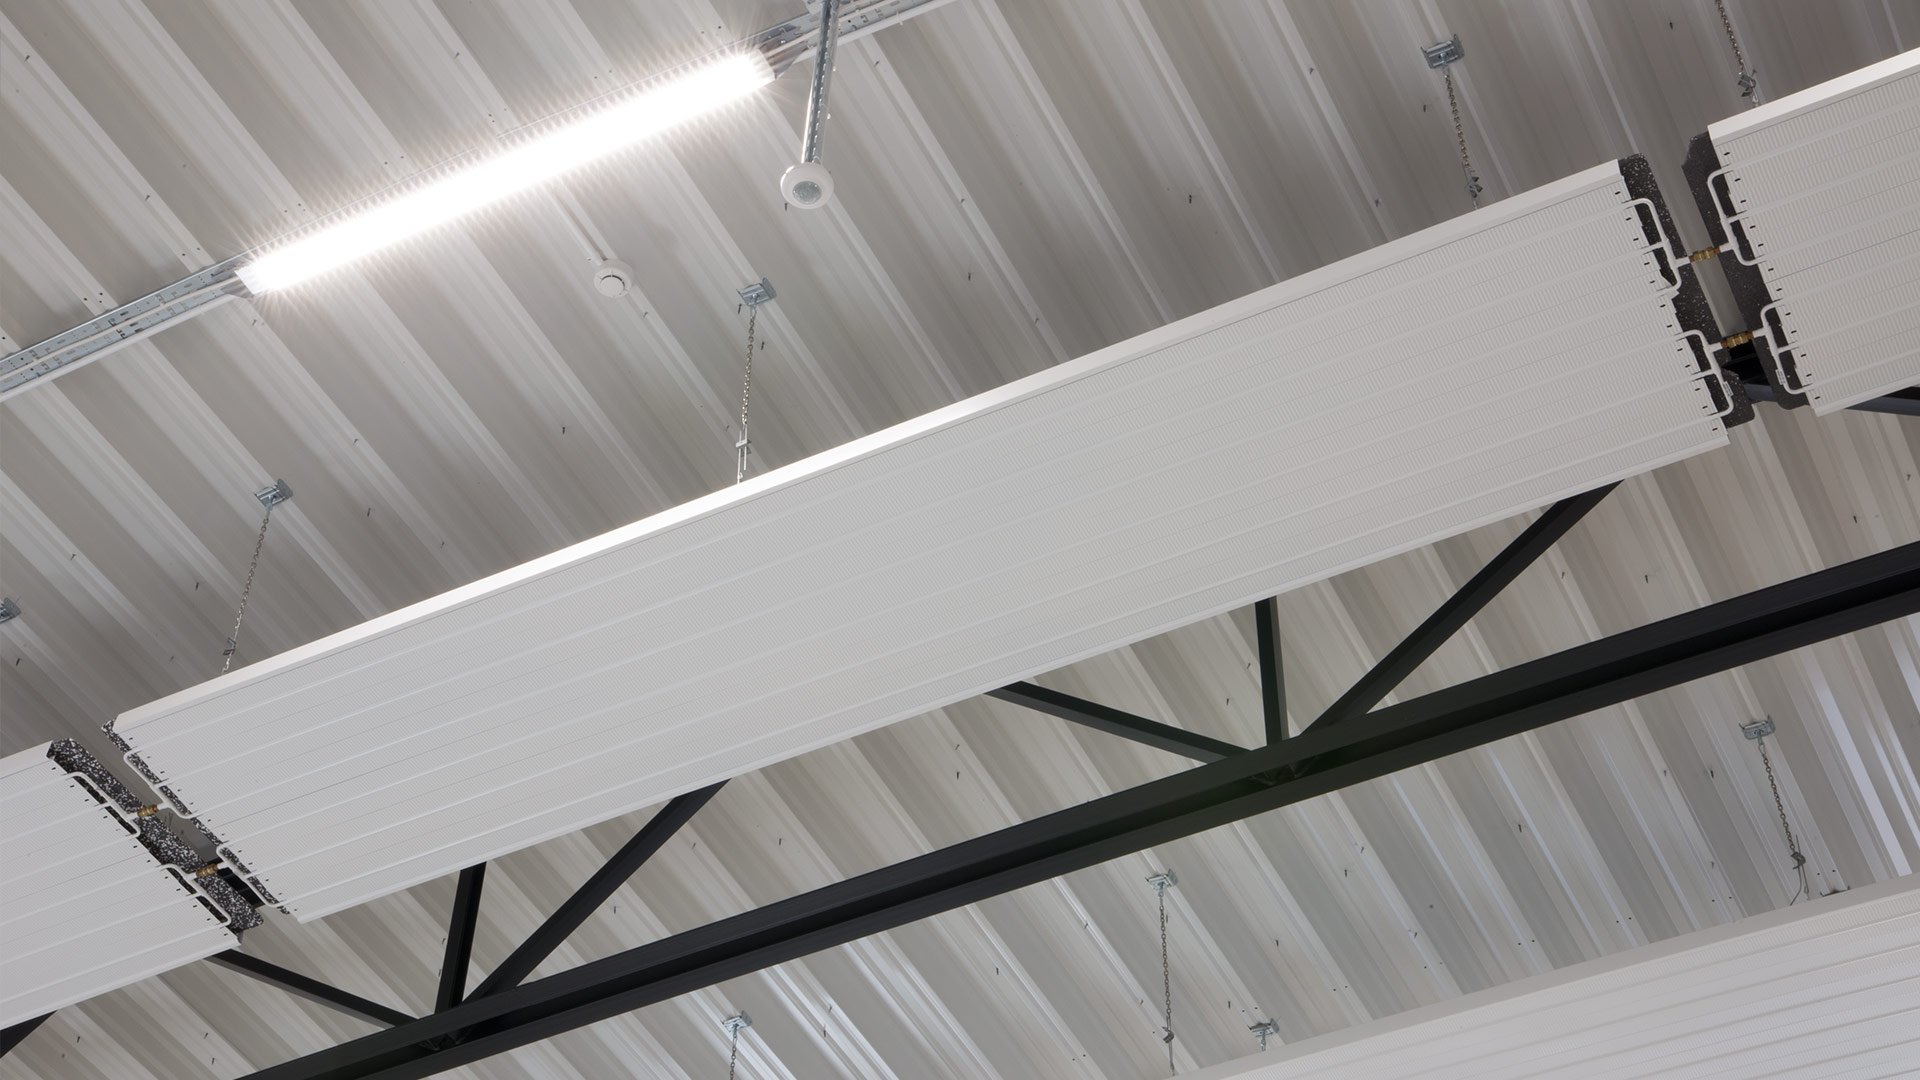 Certifieringen Miljöbyggnad Silver innebär att arbetsmiljön i både kontor och lager är i toppklass och värmeelementen i höglagrets tak gör det behagligt att vistas där även när kylan gör entré